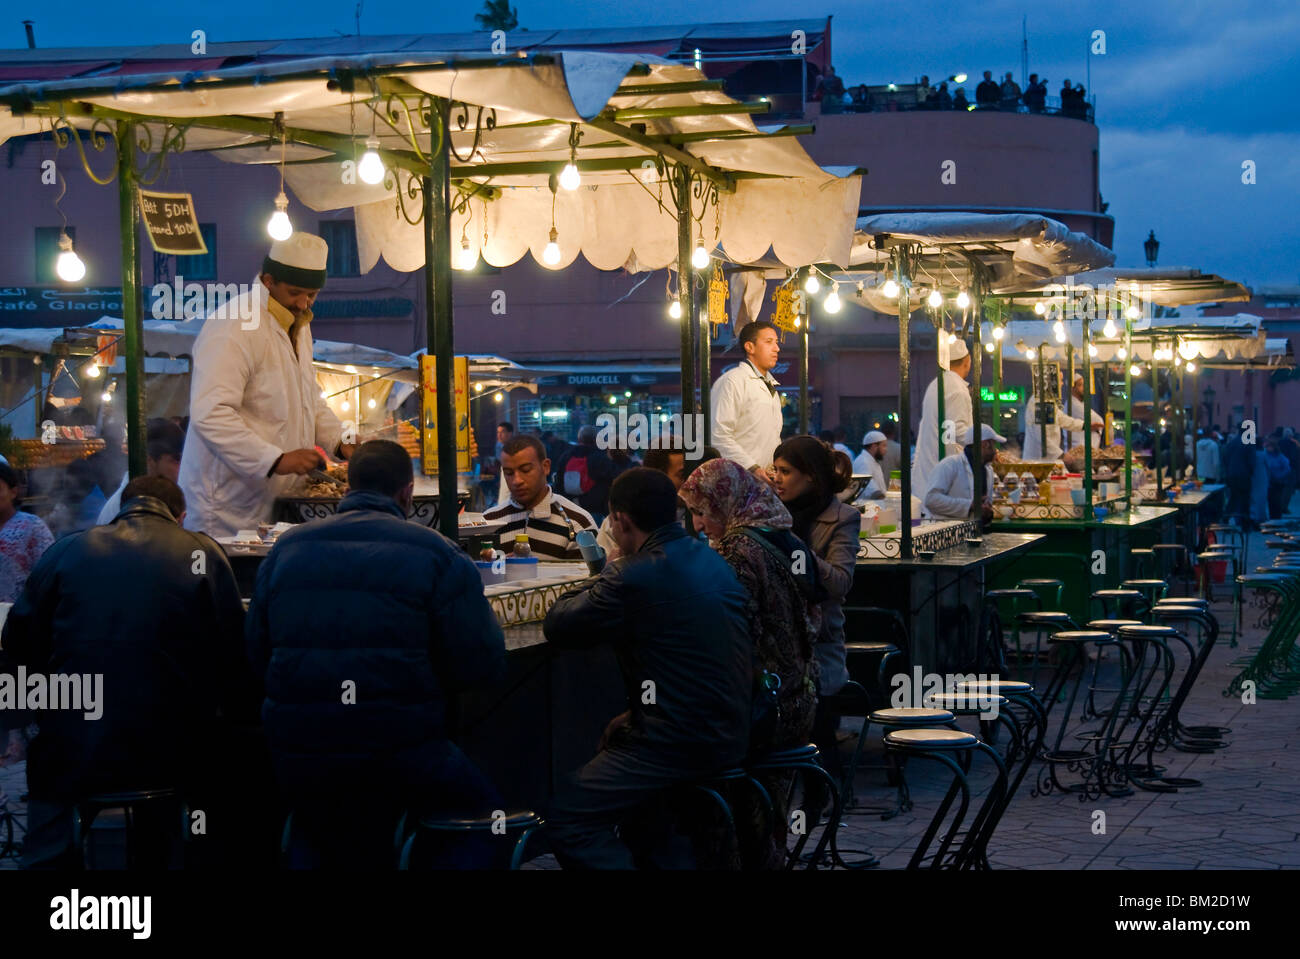 La vente de la nourriture dans leurs cuisiniers s'immobilise dans la place Djemaa el Fna, la Place Jemaa el Fna (Place Djemaa el Fna), Marrakech (Marrakech, Maroc) Banque D'Images